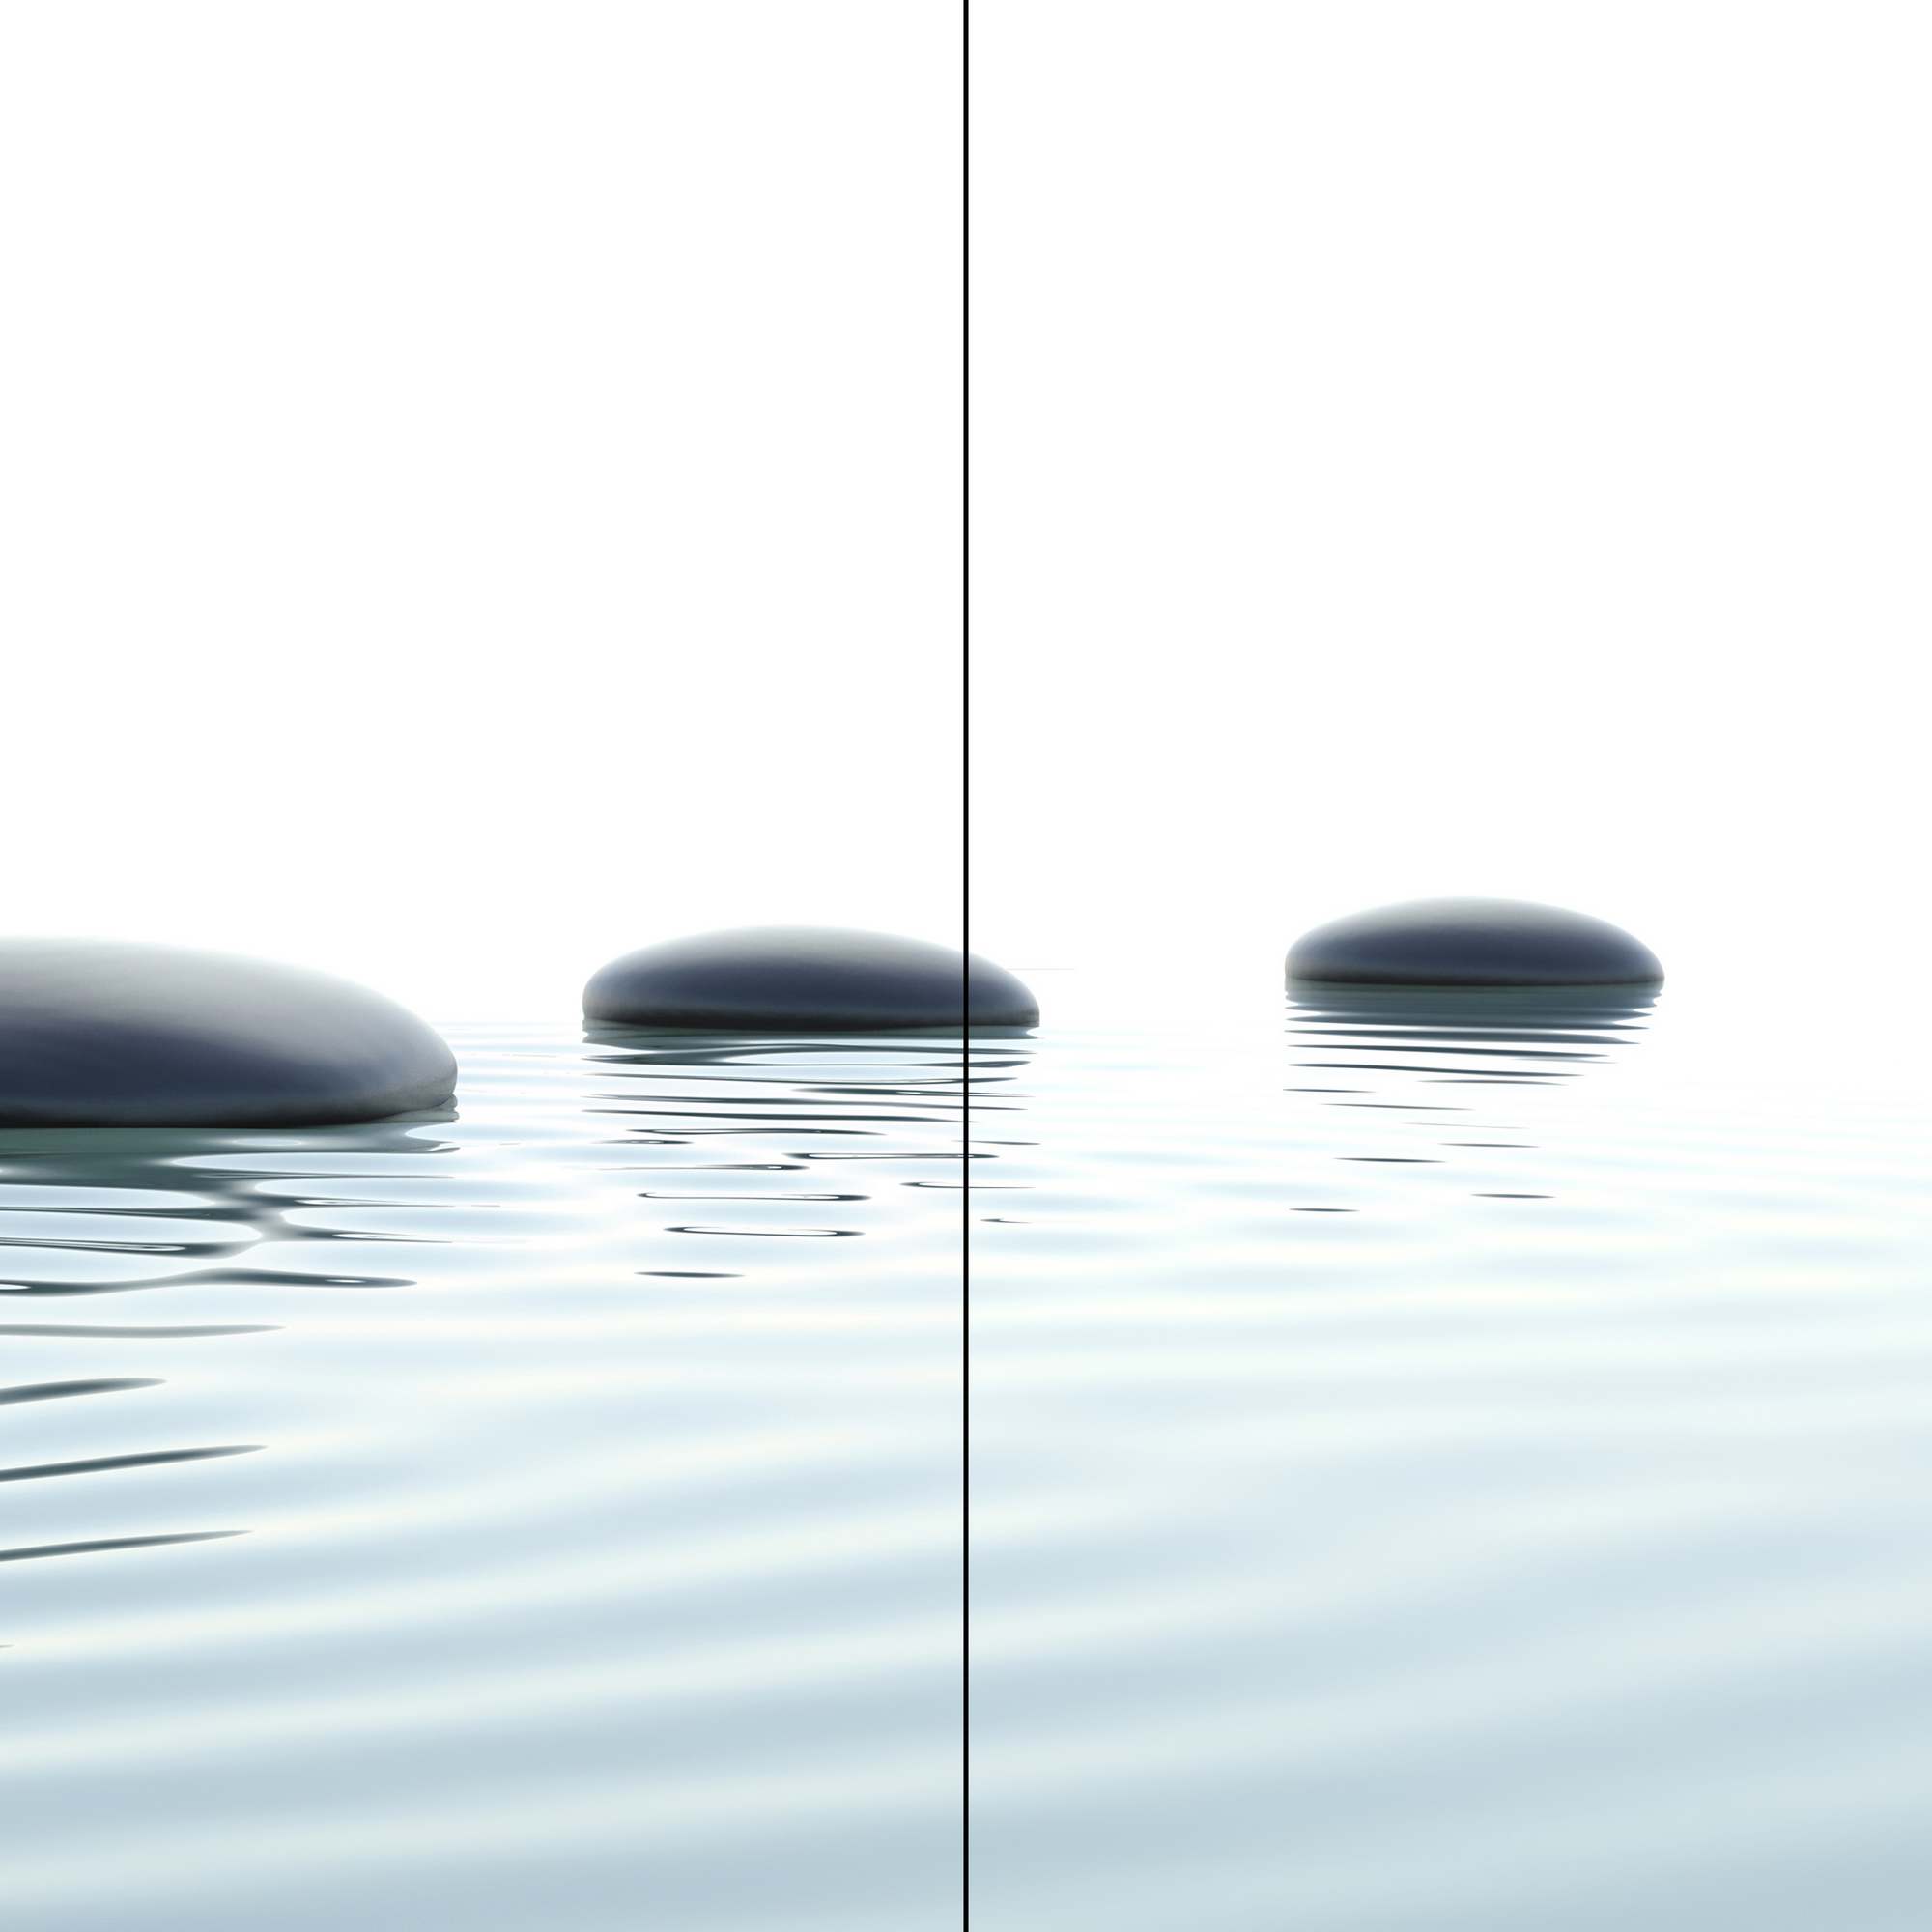 Duschrückwand 'DecoDesign' Zen-Steine Wasser 210 x 90 x 90 cm, über Eck + product picture